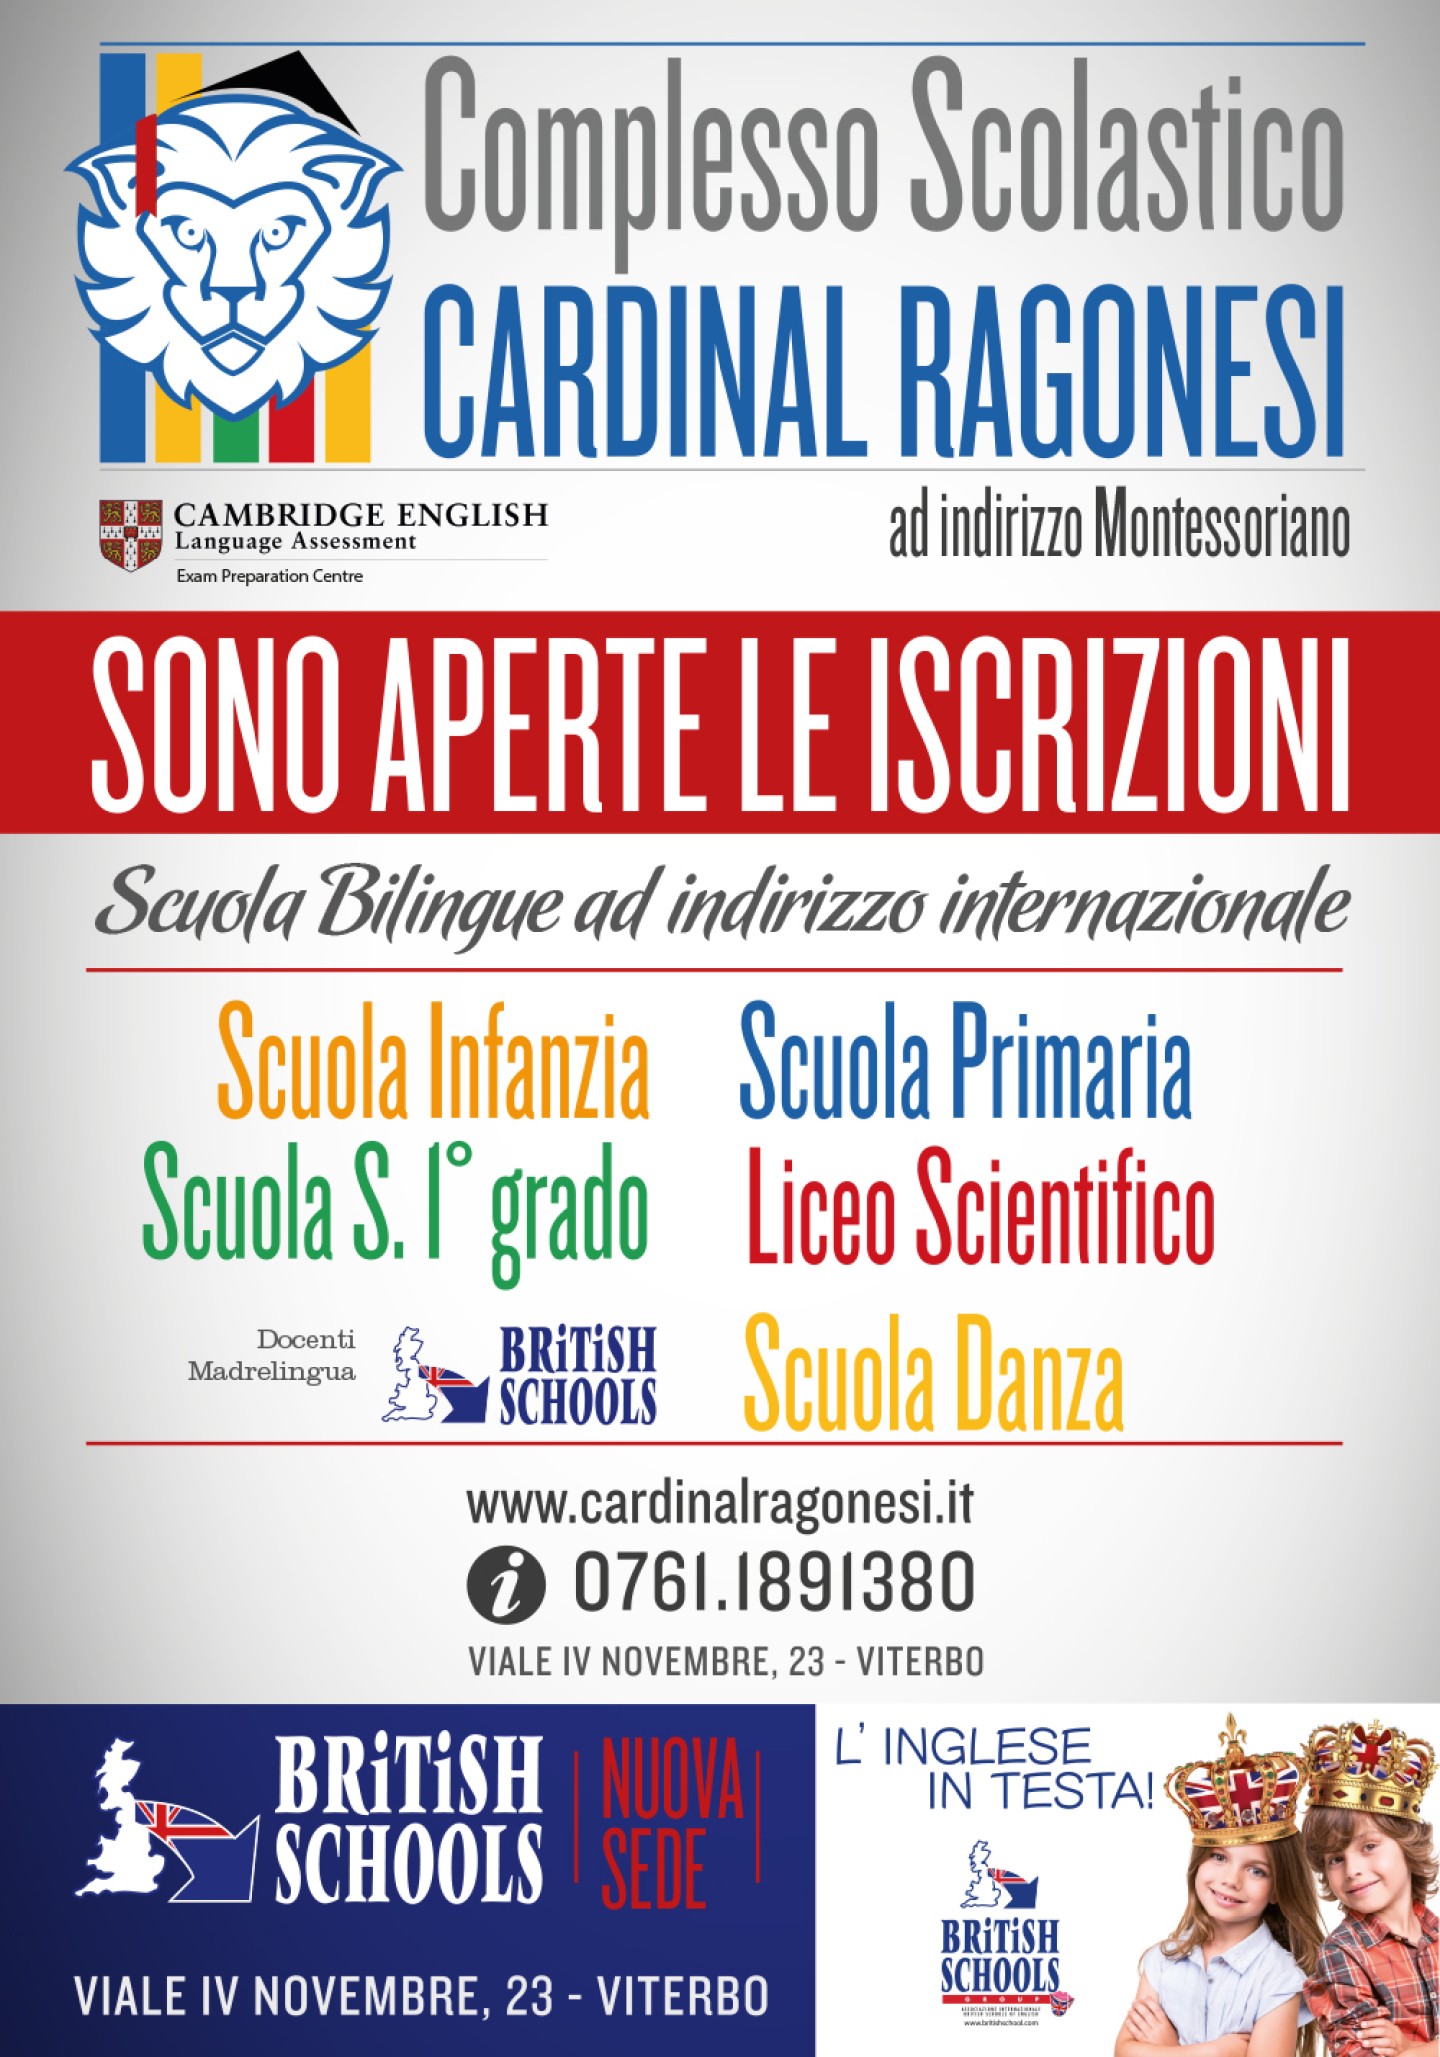 Cardinal-Ragonesi-AS2016-17-Iscrizioni